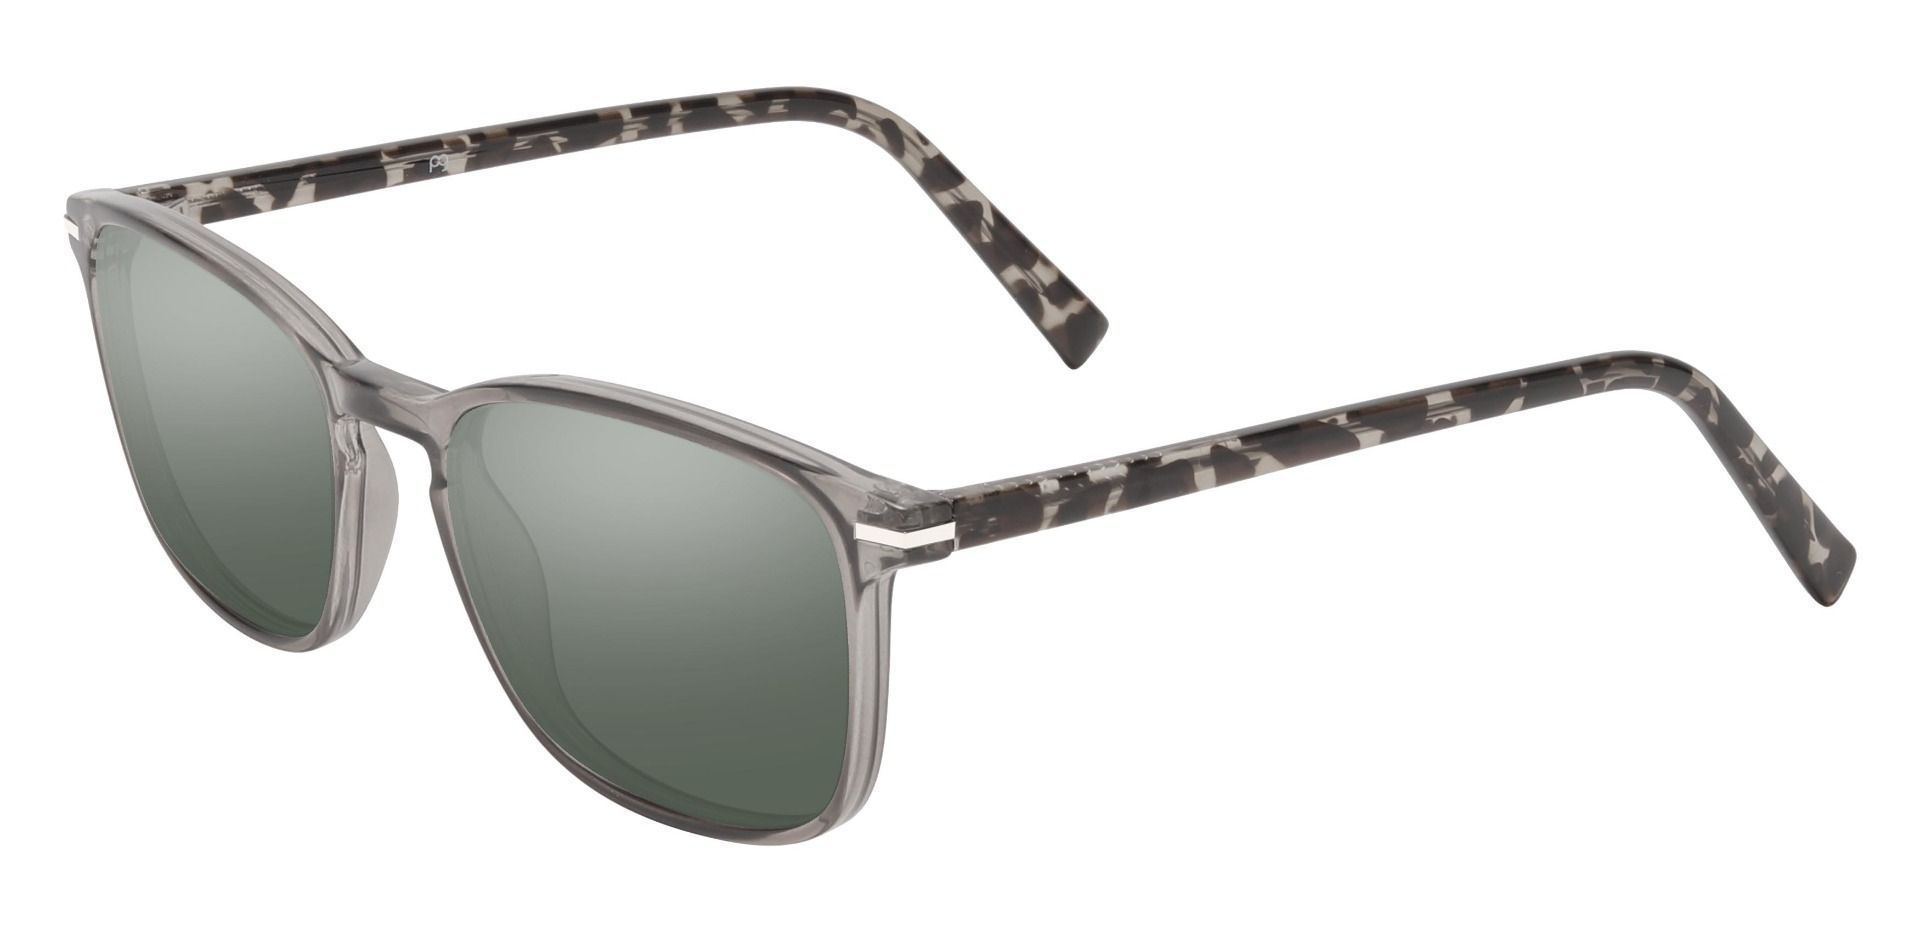 Dumont Rectangle Progressive Sunglasses - Gray Frame With Green Lenses